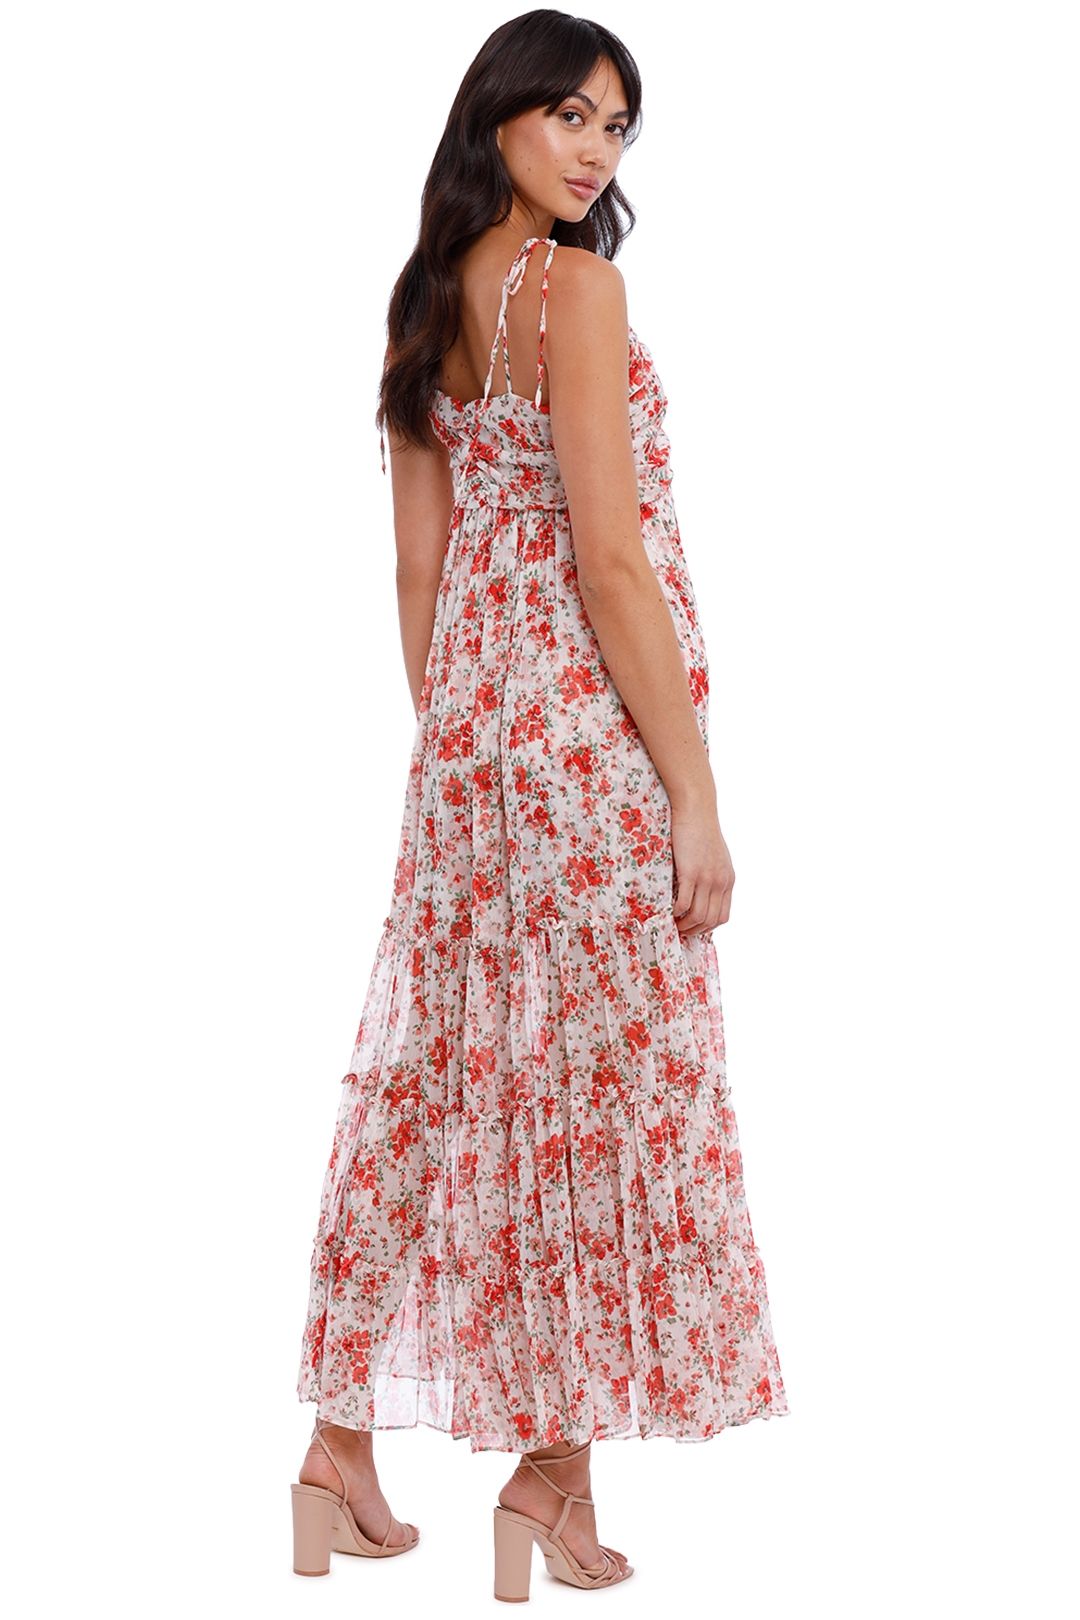 Misa LA Fallon Dress Floral Print